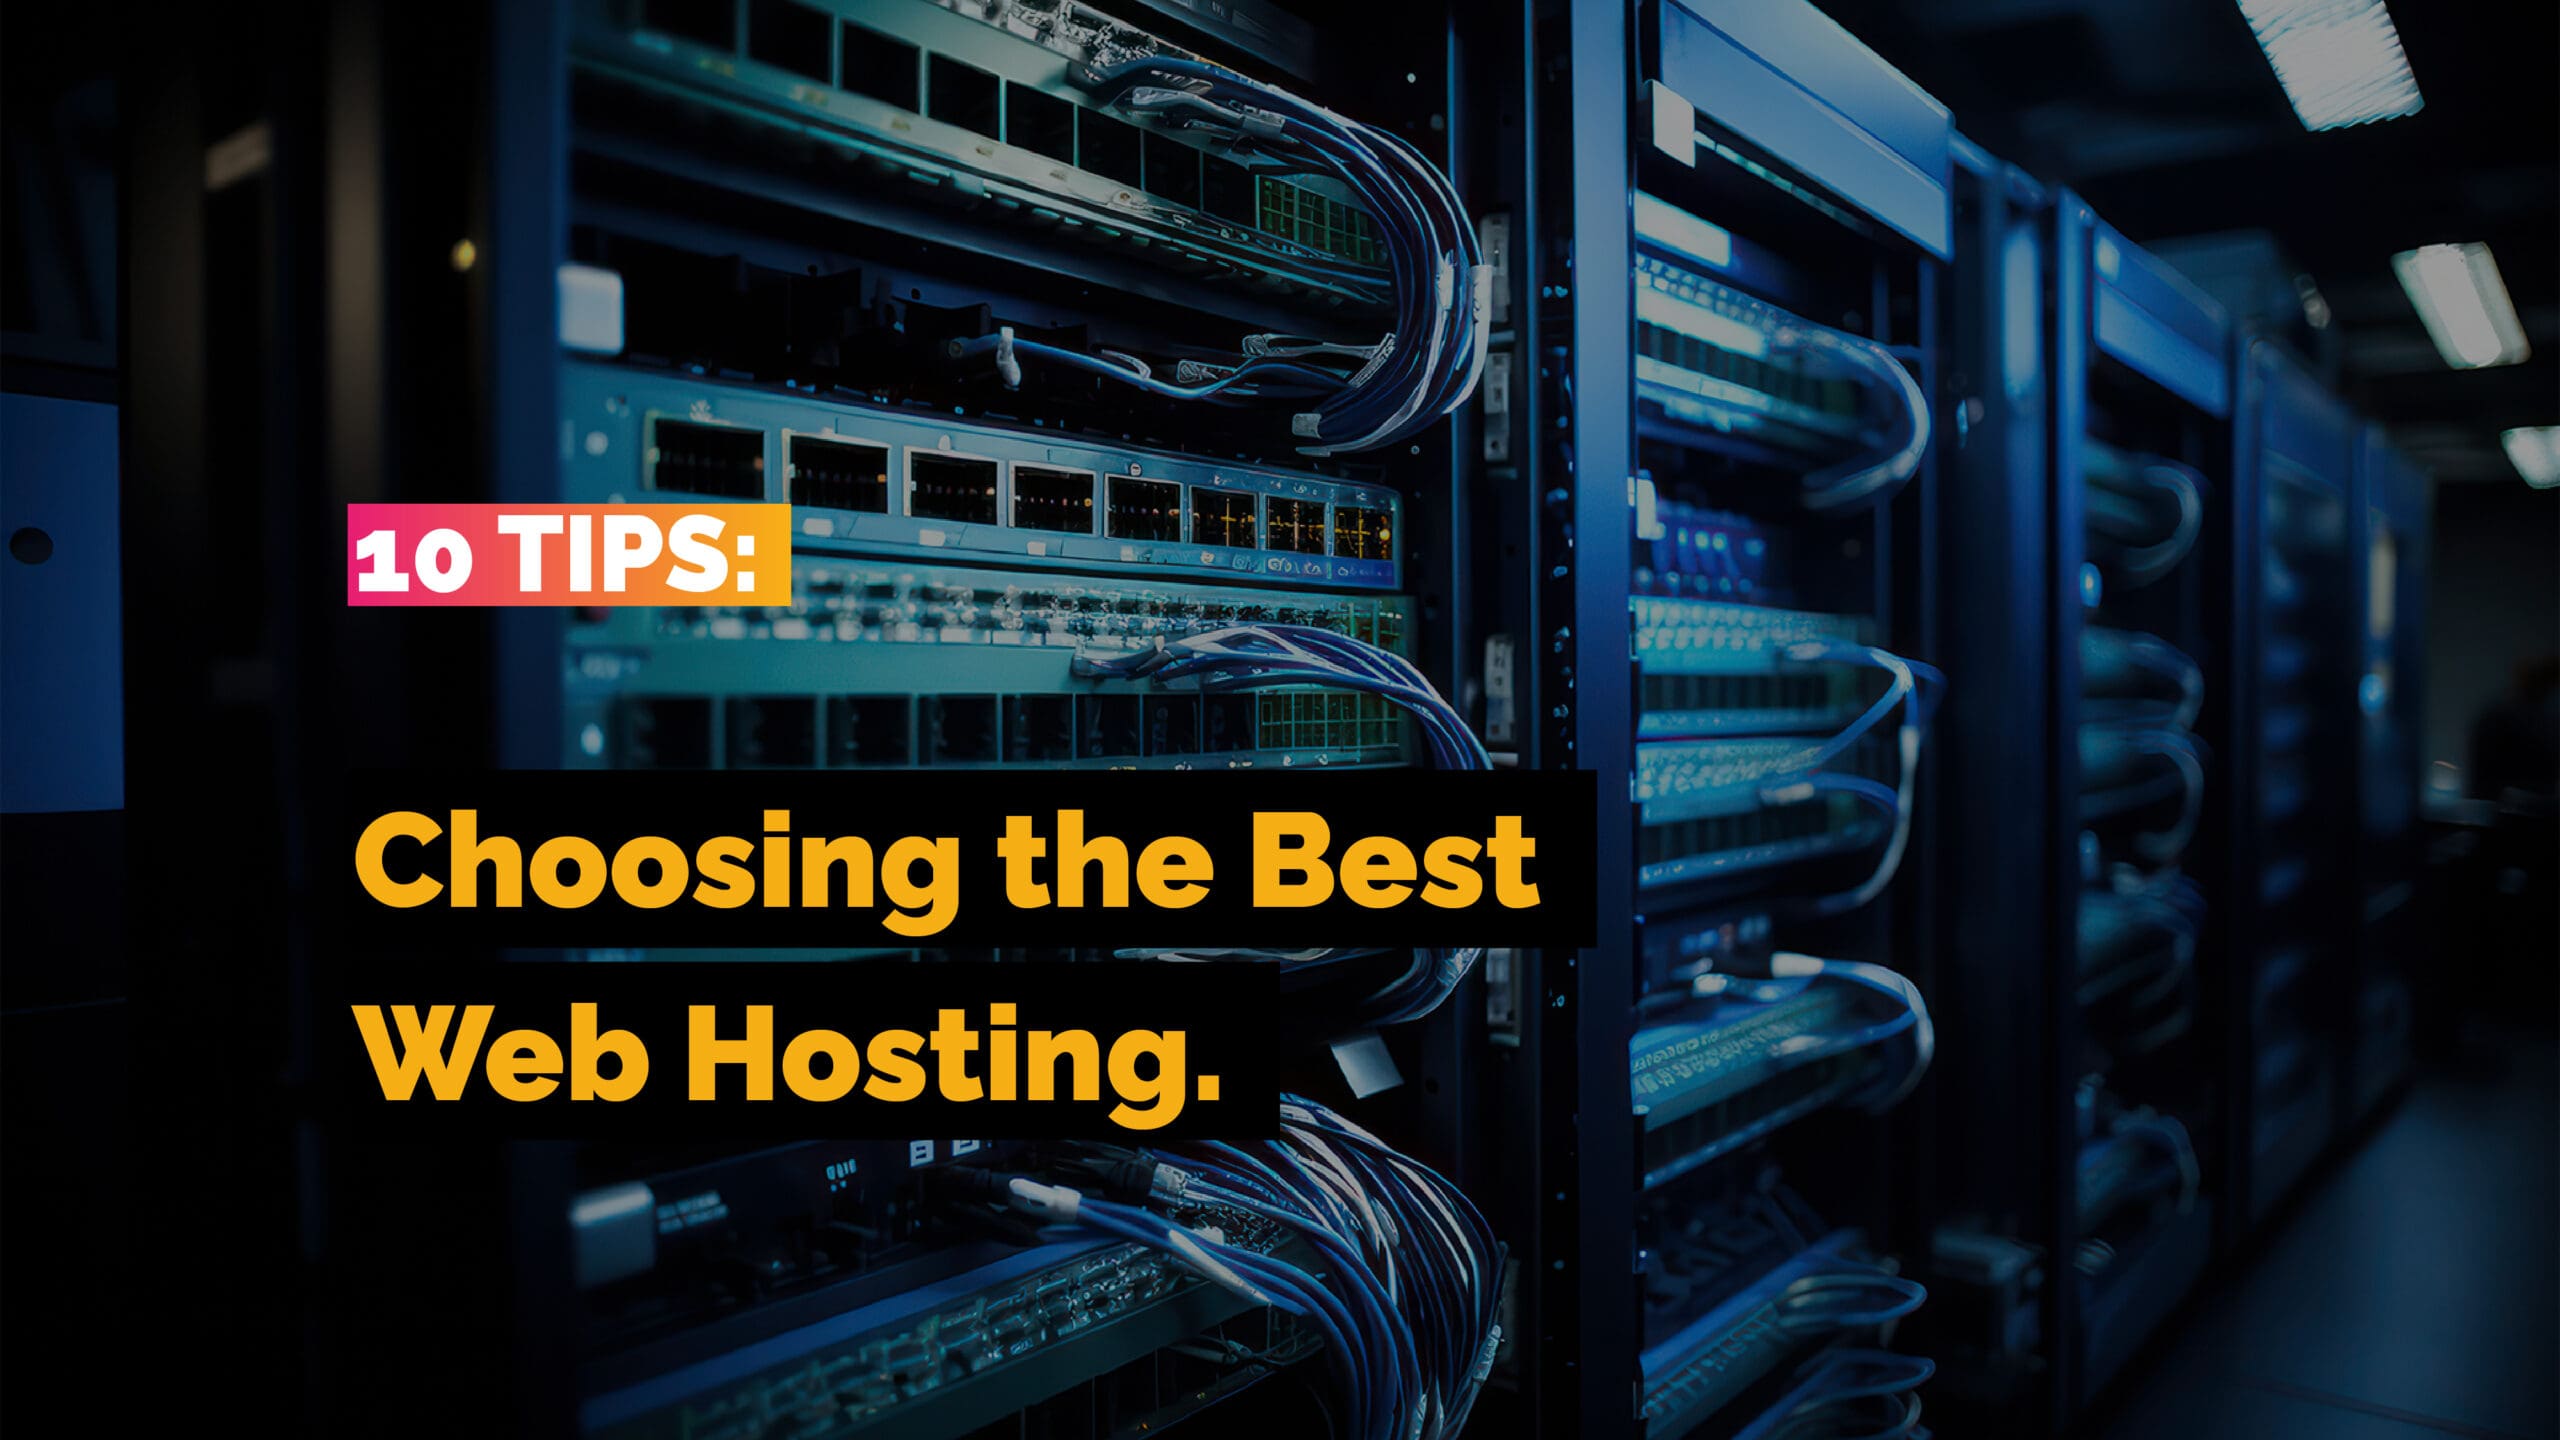 10 Tips for Choosing the Best Web Hosting